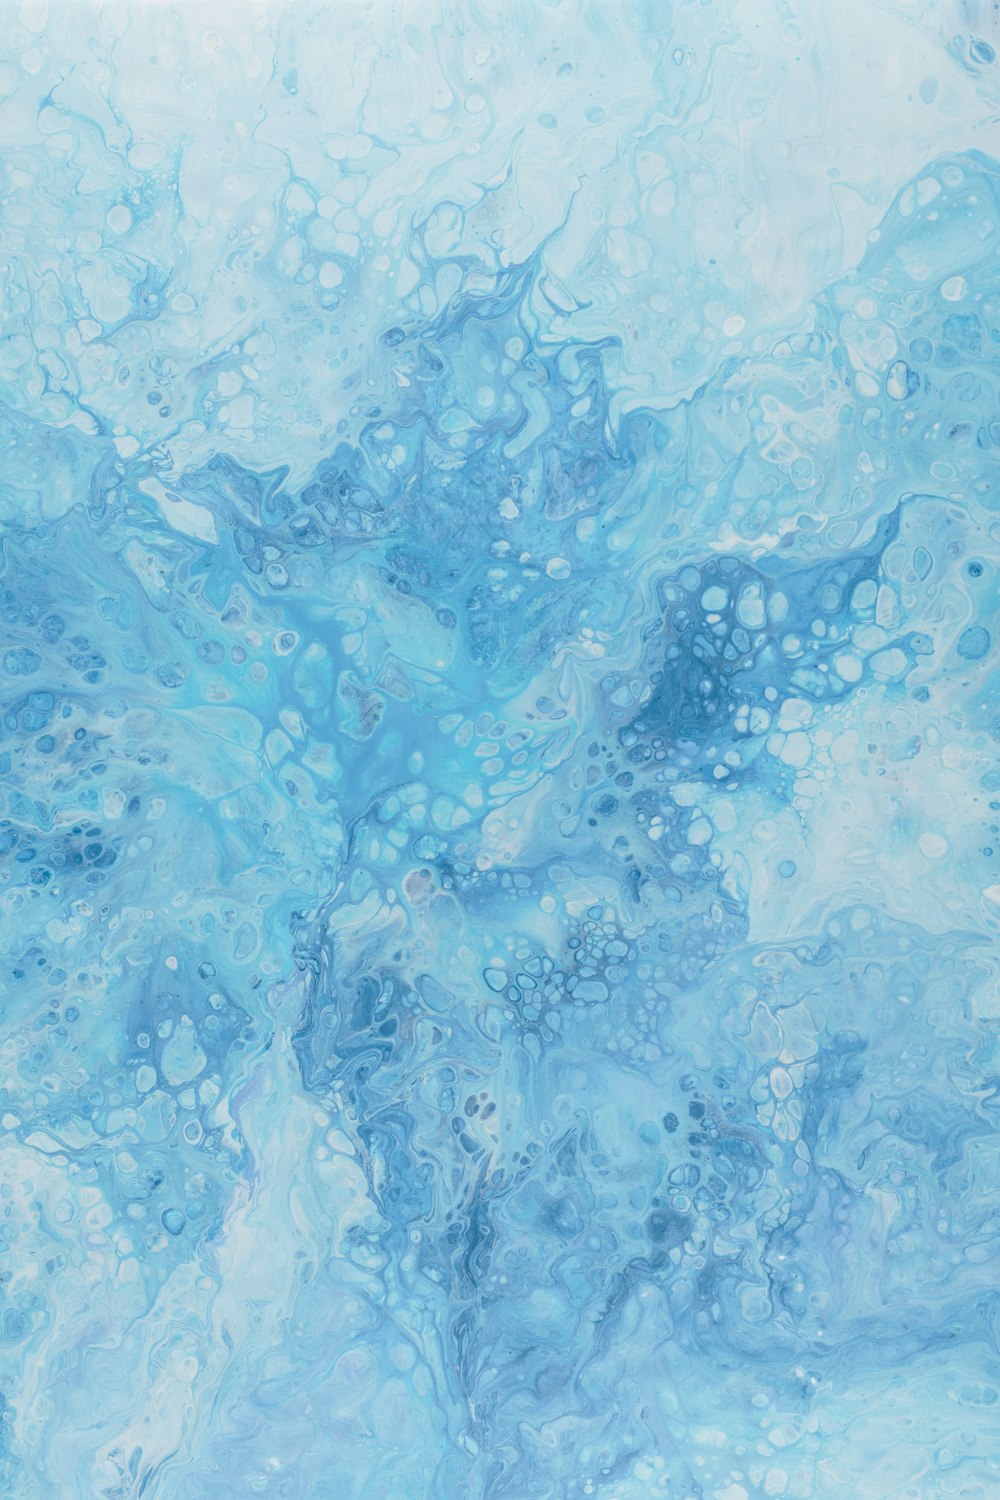 uma pintura abstrata de cores azuis e brancas